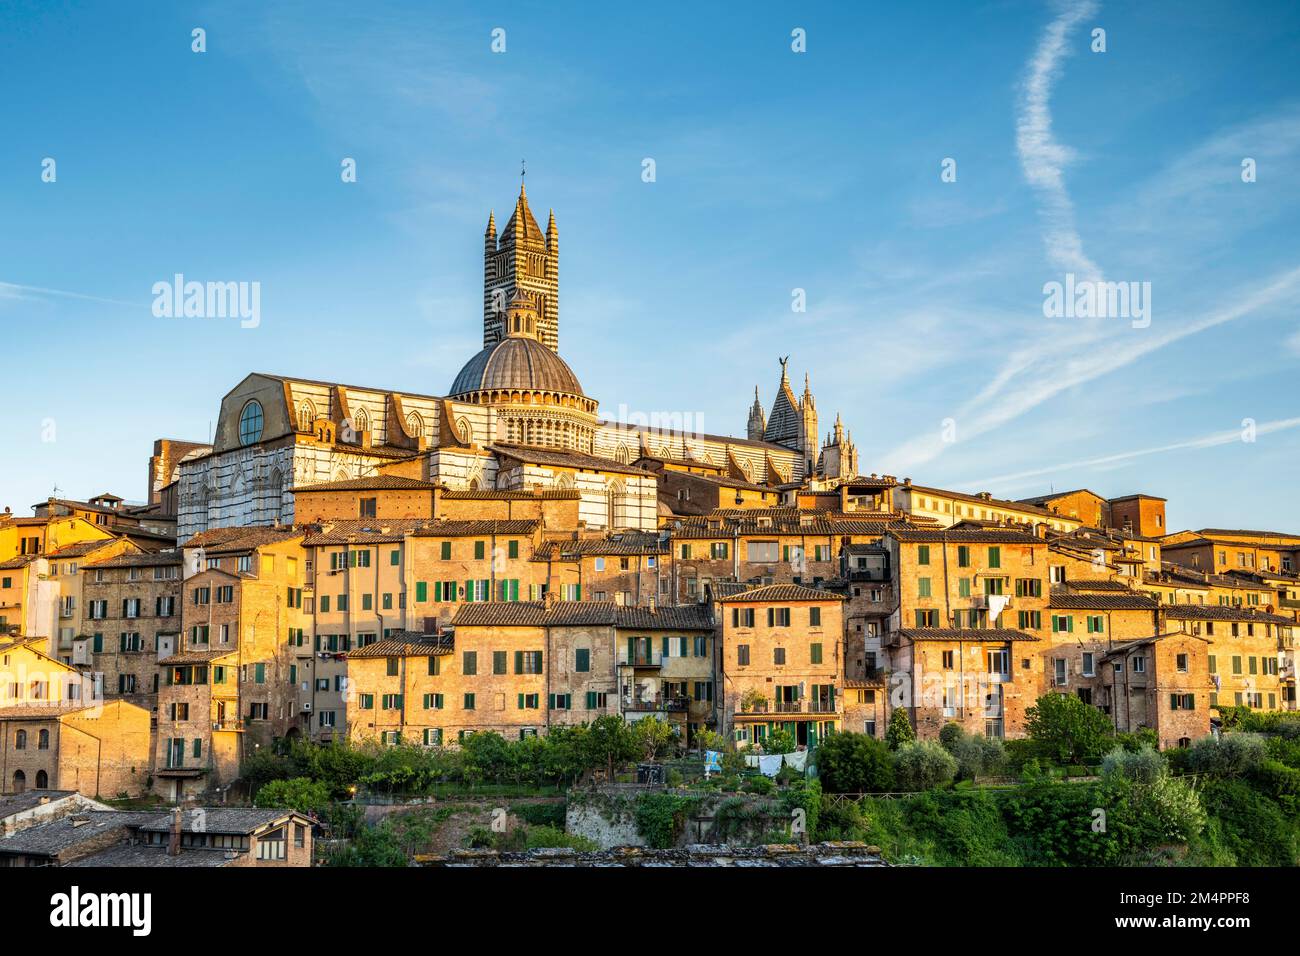 City view, old town with Duomo Santa Maria Assunta, Siena, Tuscany, Italy Stock Photo